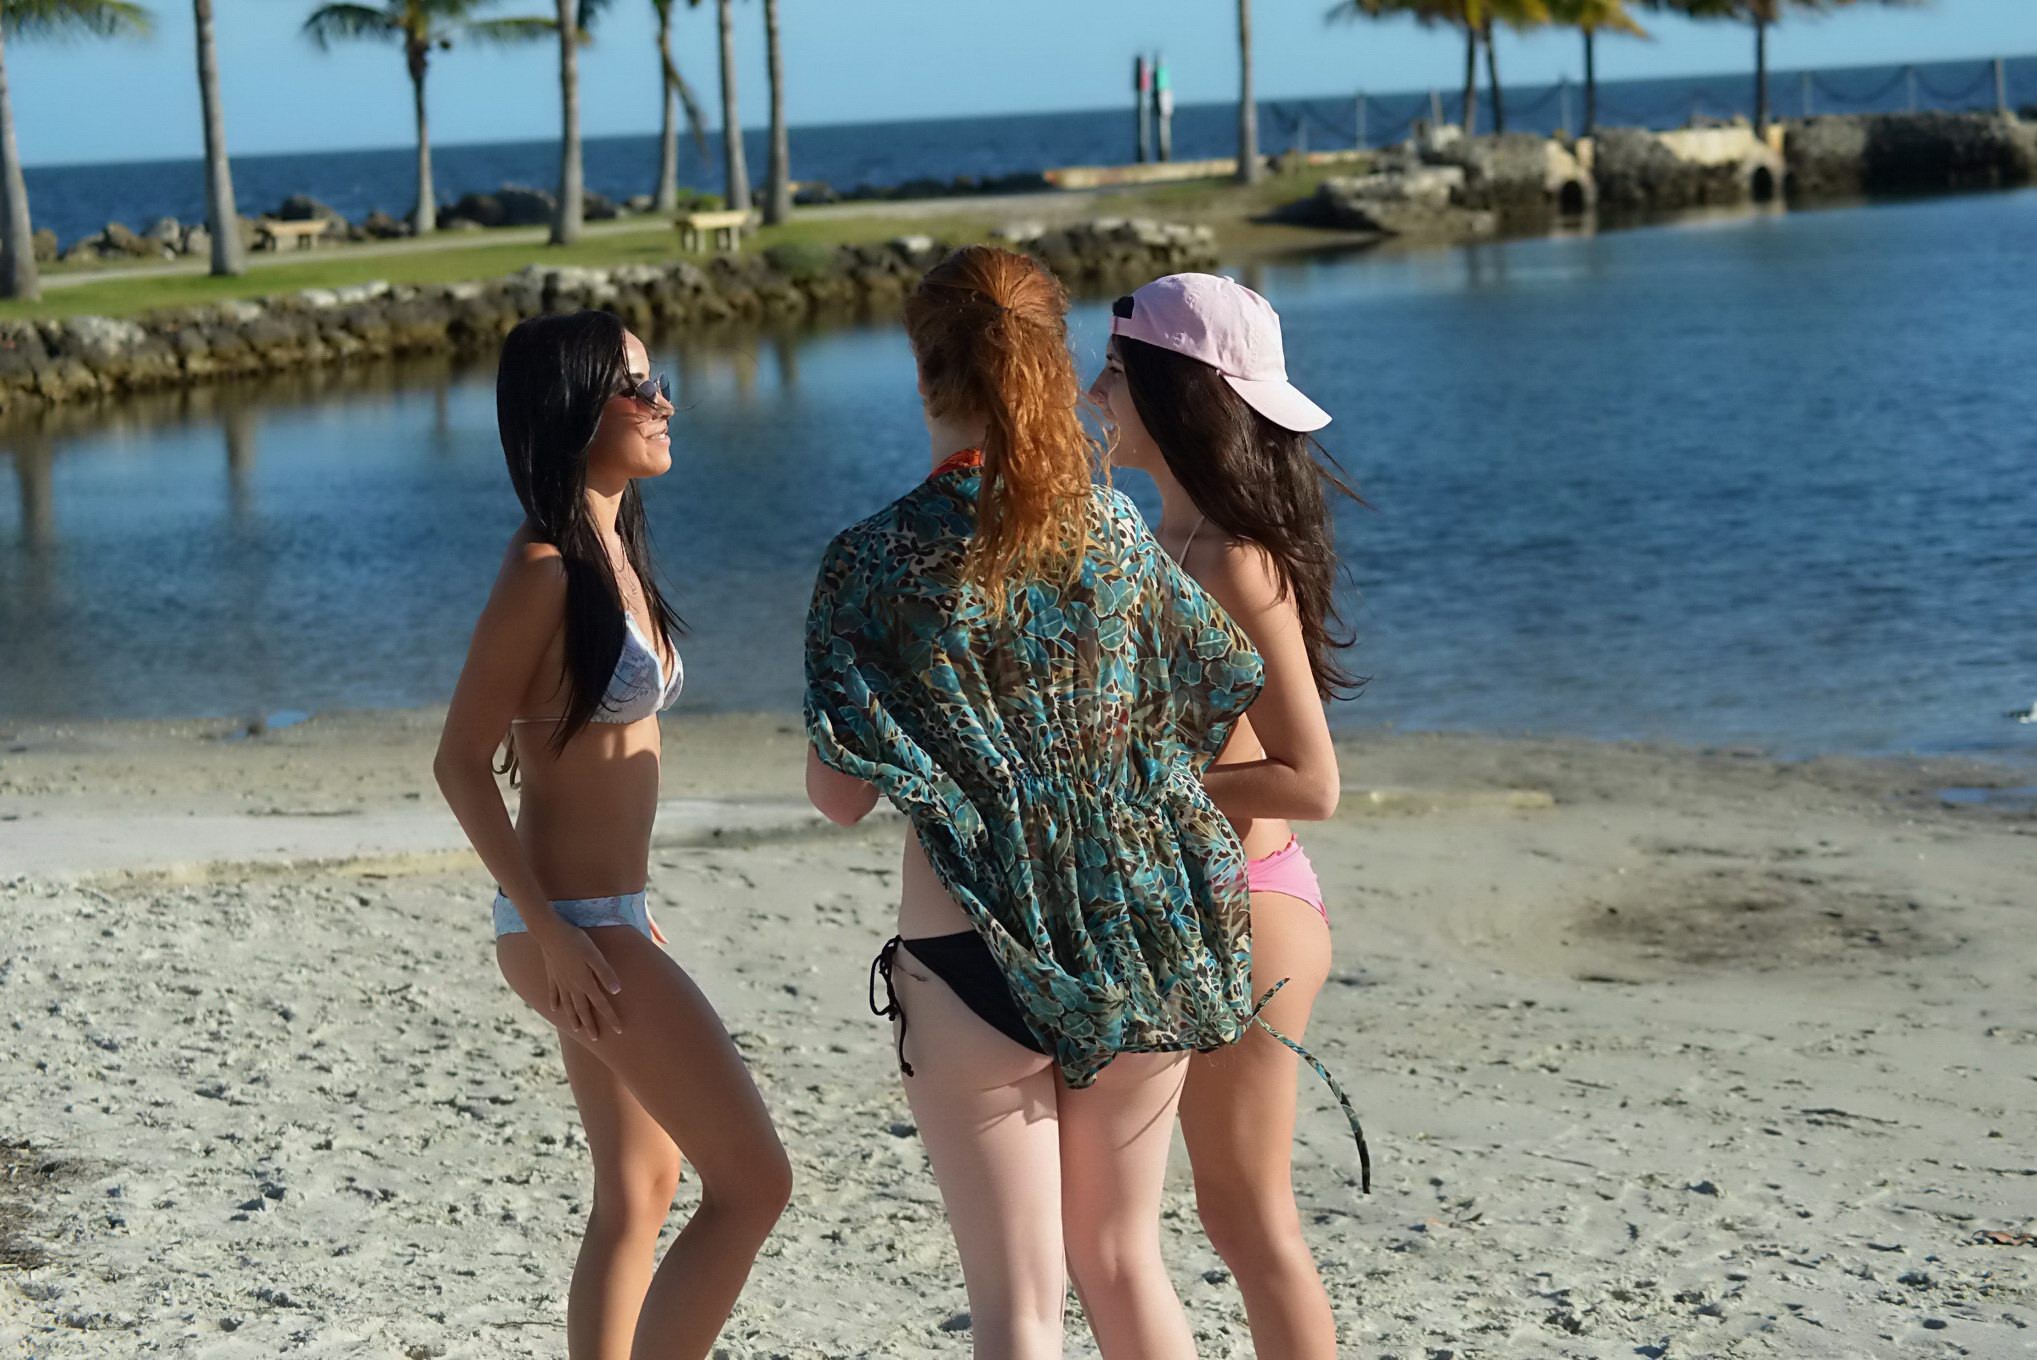 Lisa opie bronzant son corps parfait dans un bikini string aux couleurs vives sur la plage de miami.
 #75203550